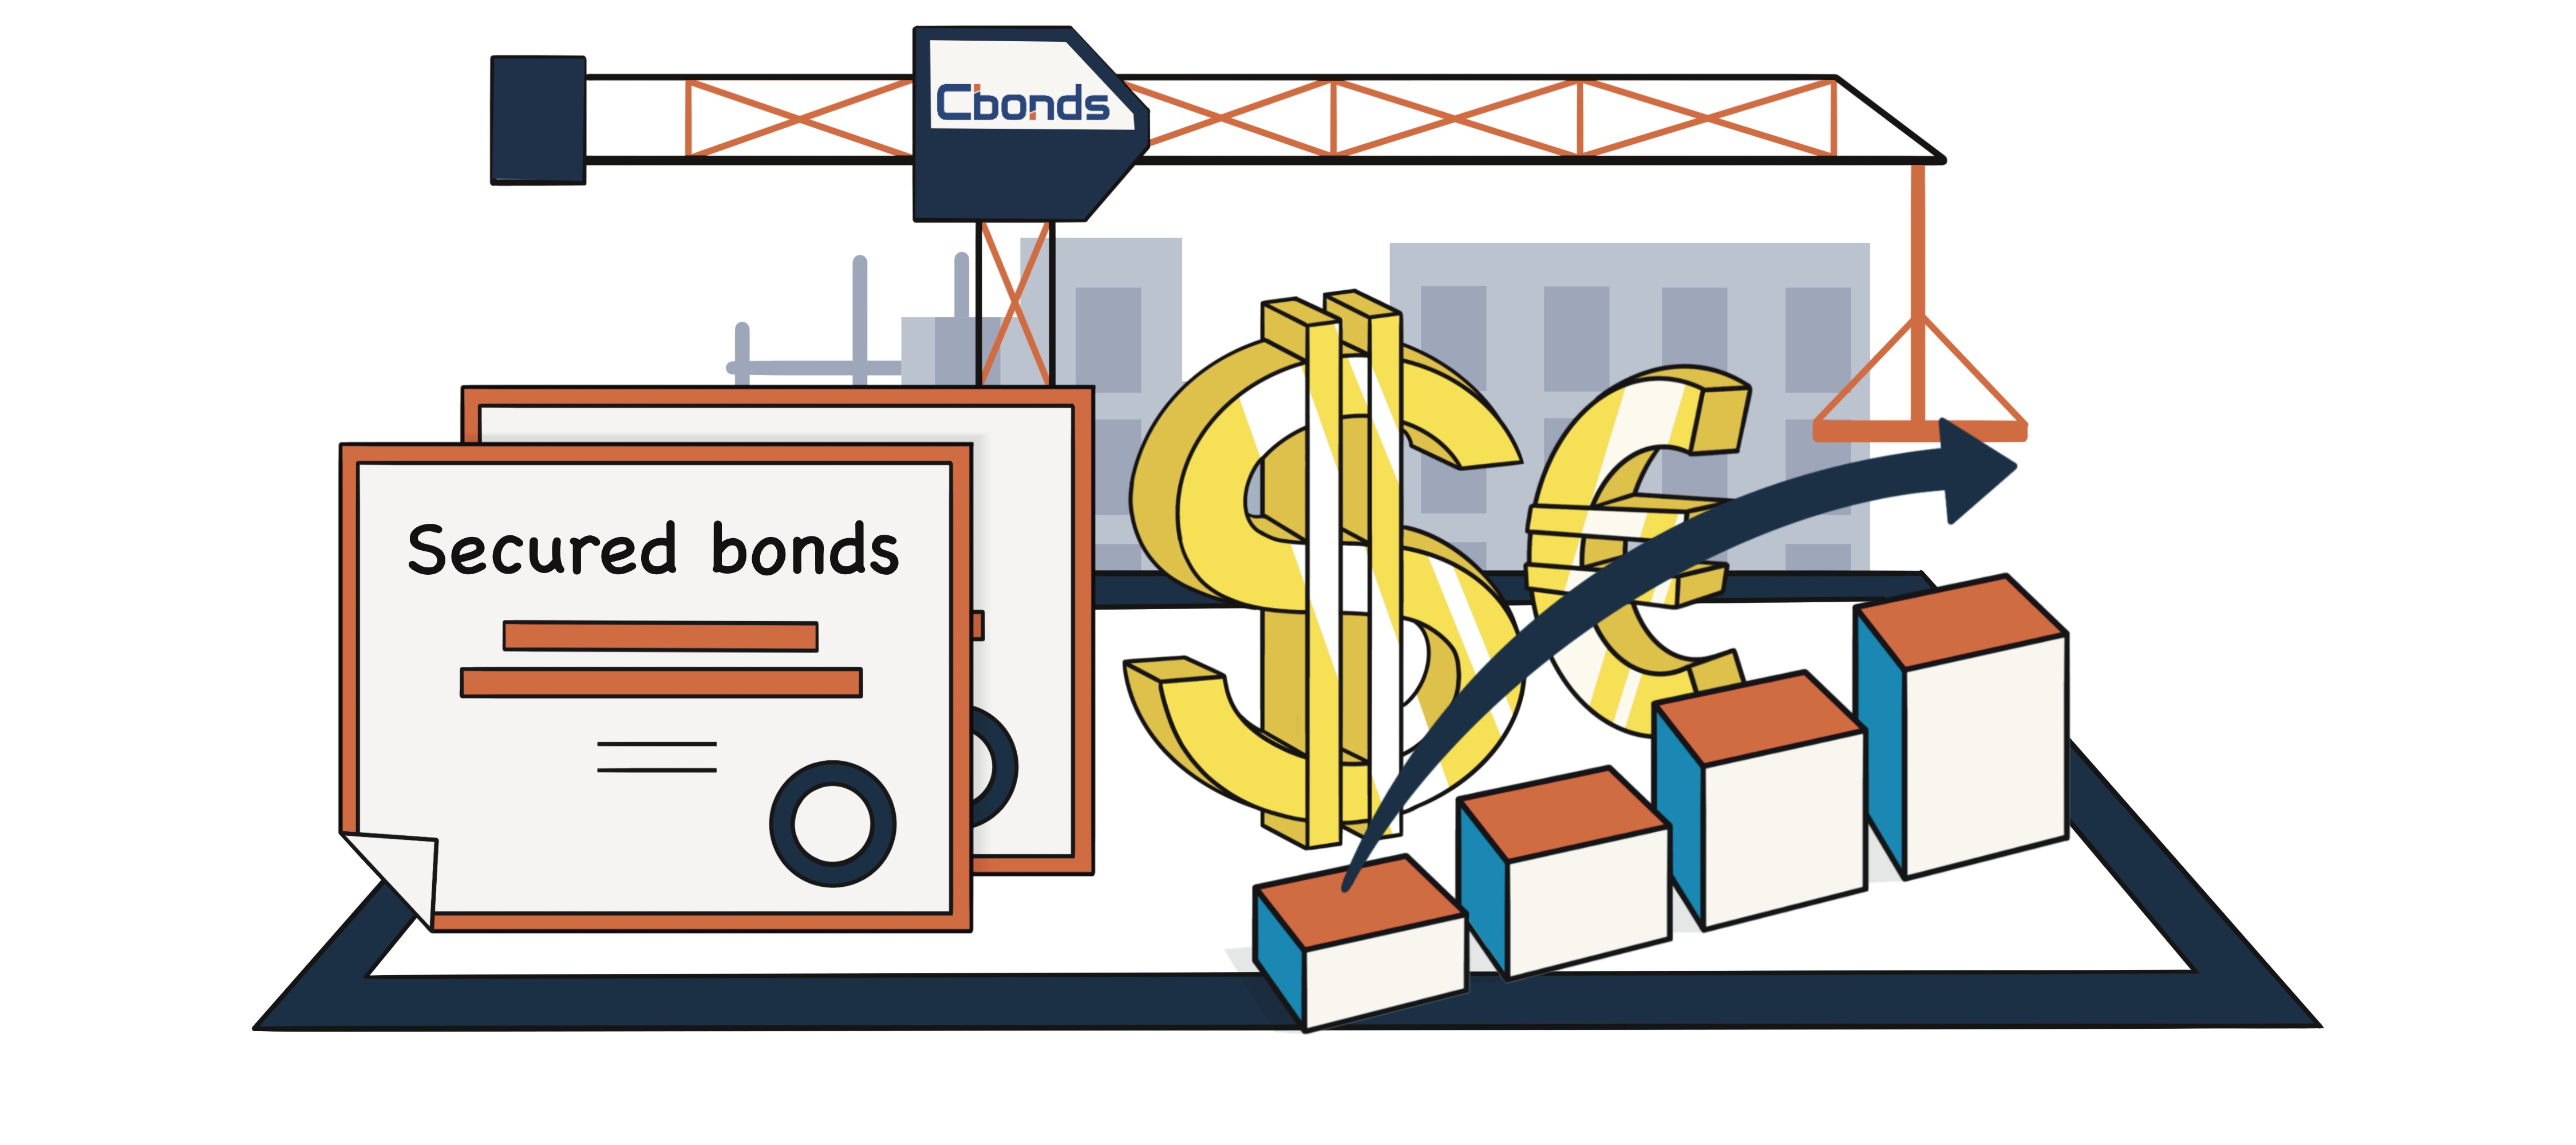 Secured bonds